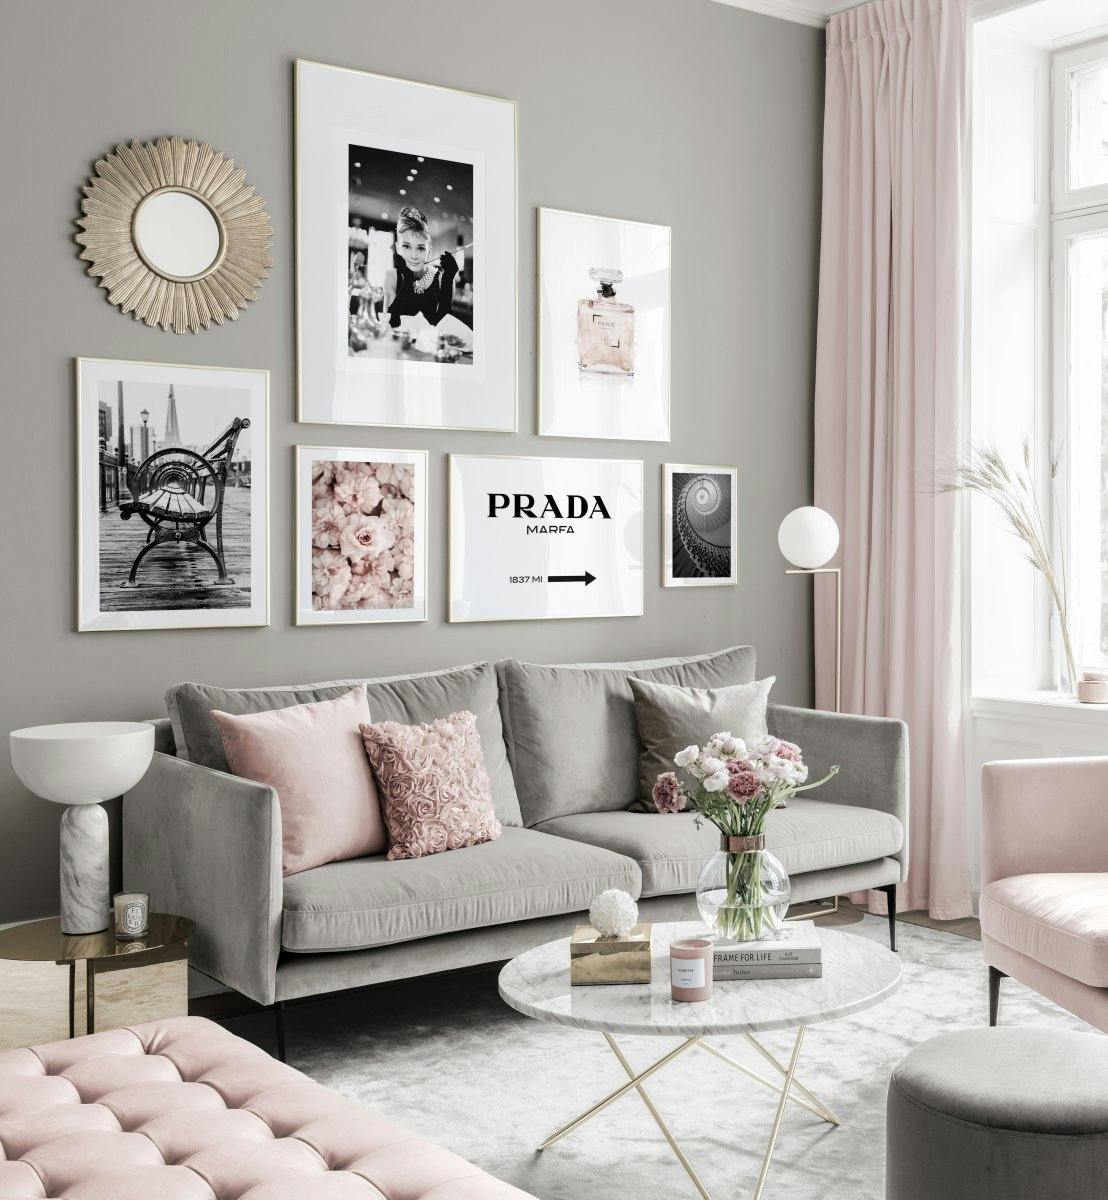 Divatos galéria fal fekete fehér poszterek rózsaszín tónusok arany keretben